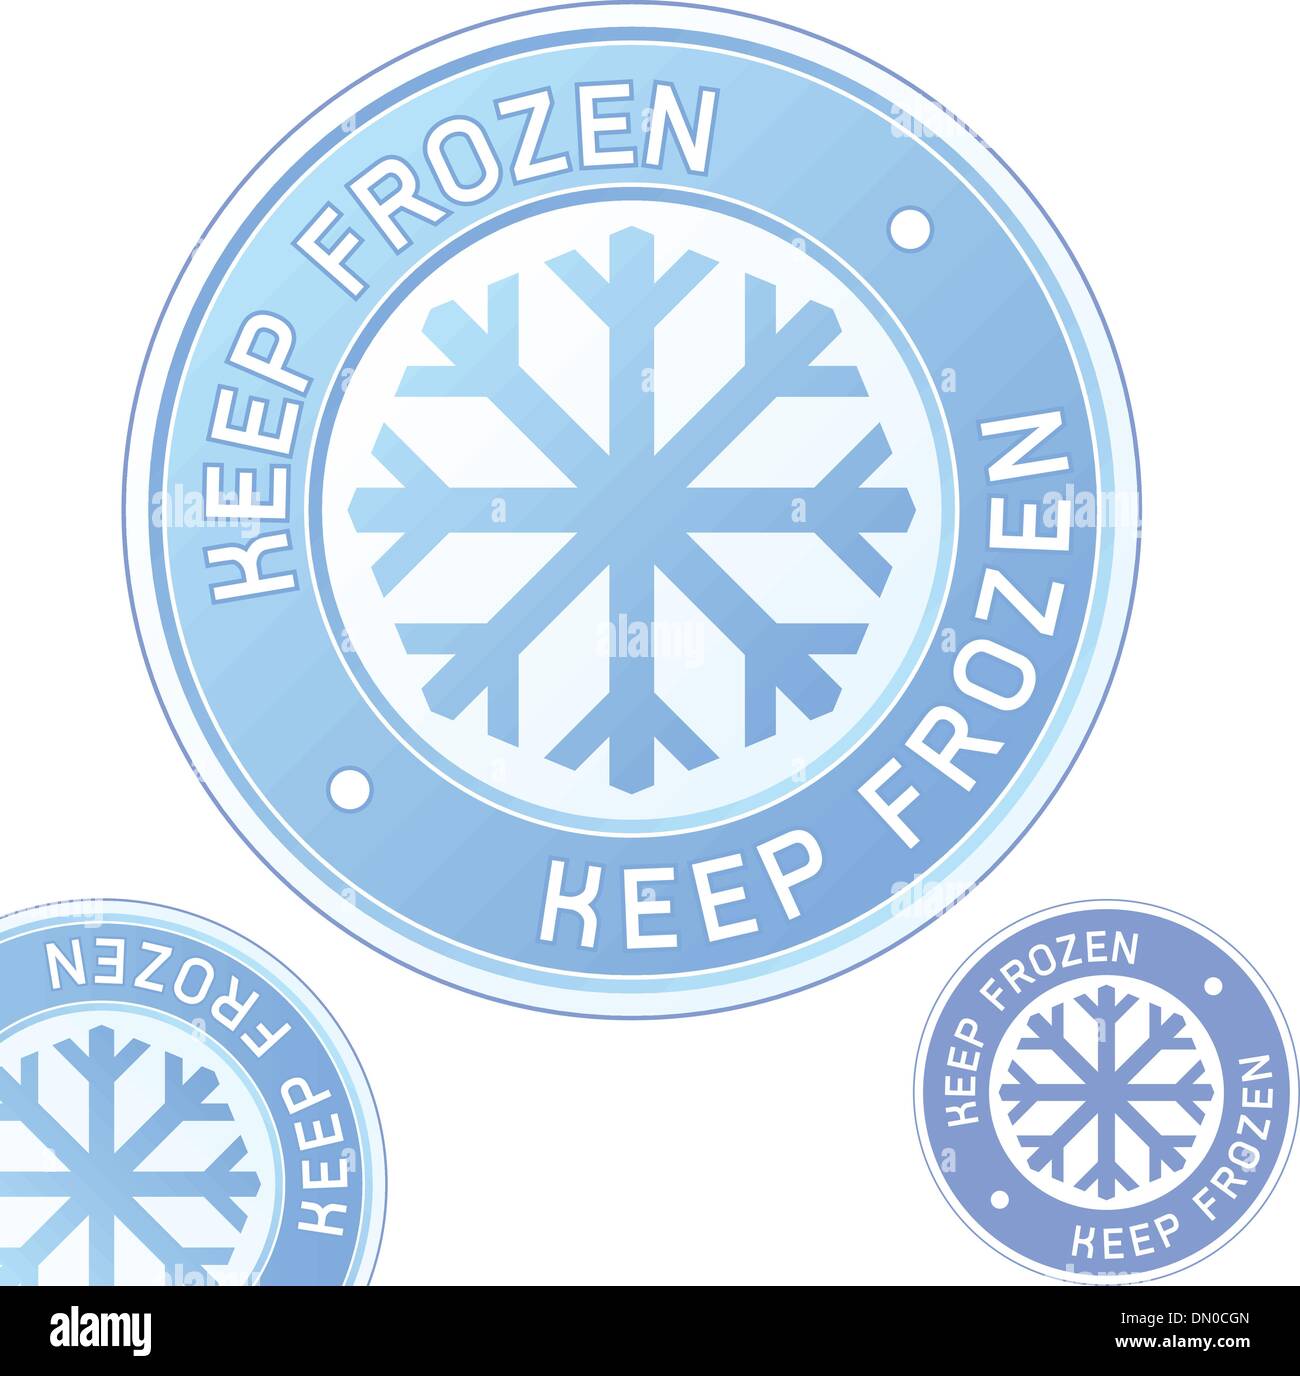 Keep frozen food label Stock Vector